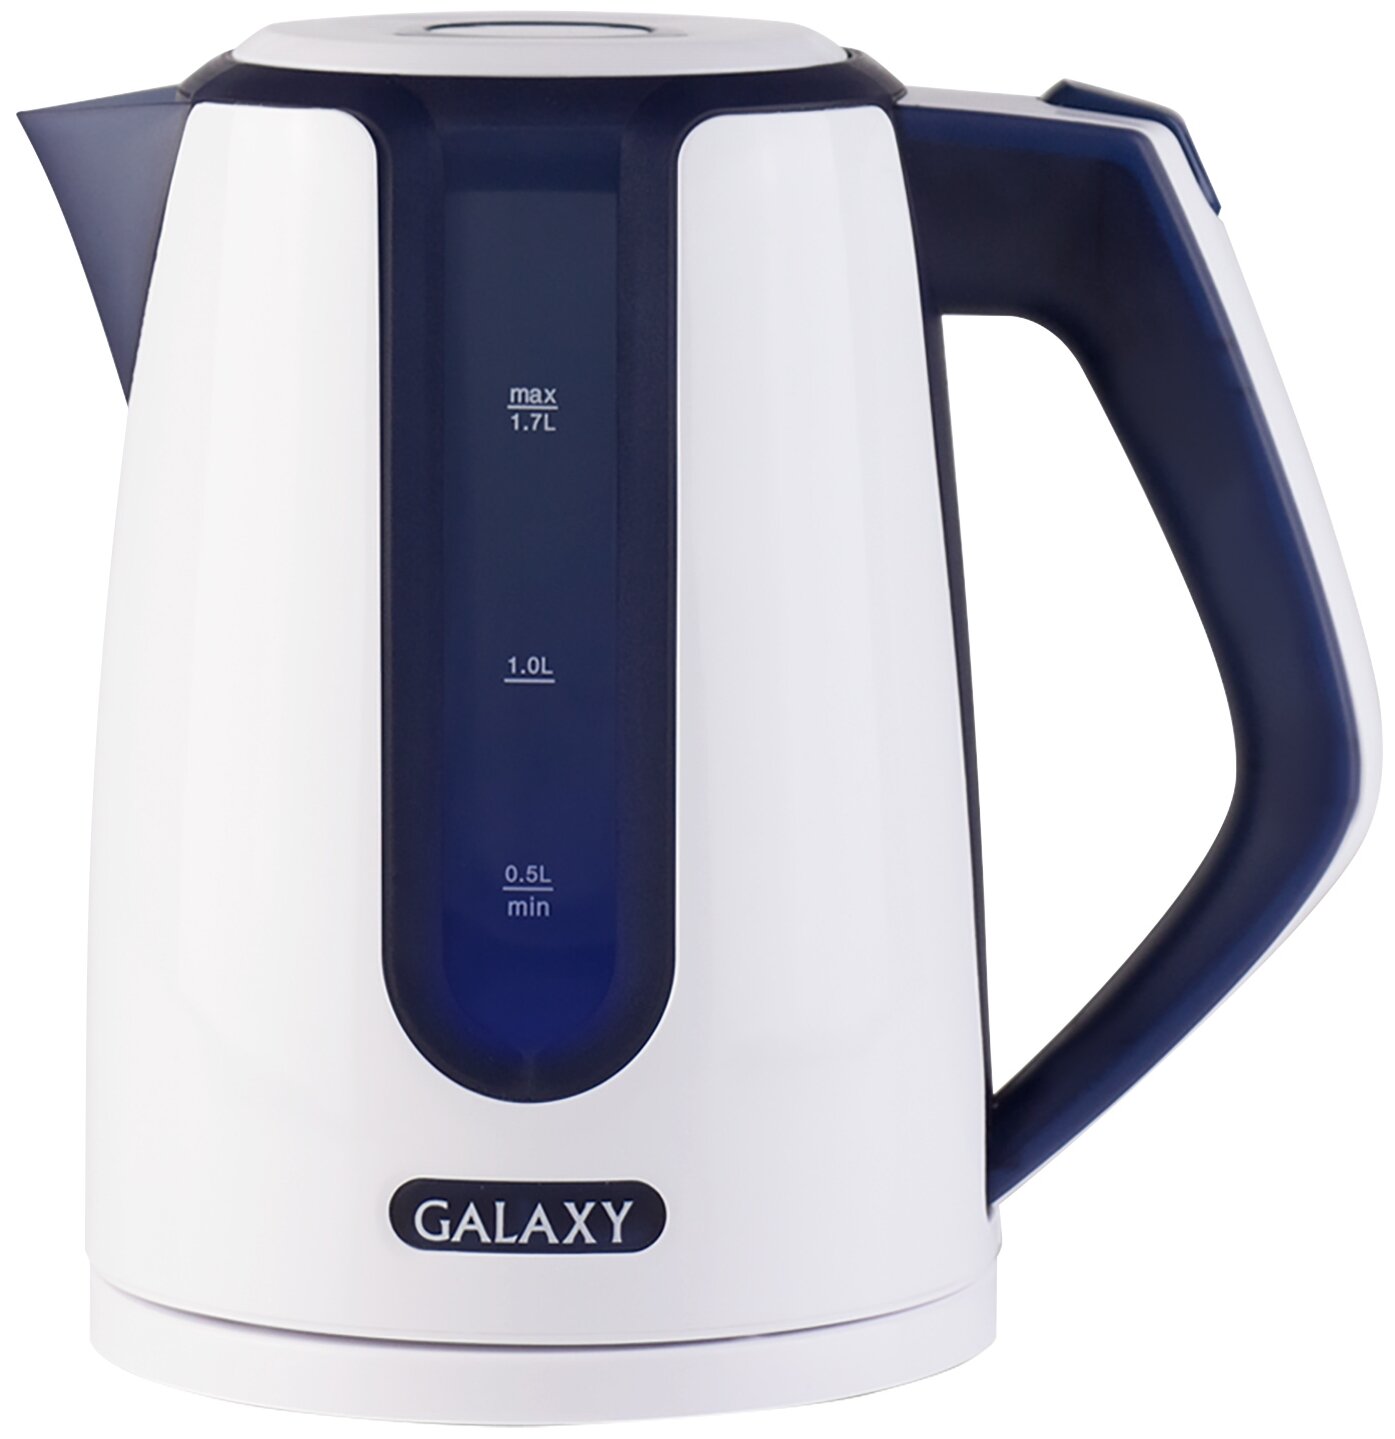 GALAXY GL 0207 синий Чайник электрический 2200Вт, объем 1,7 л., скрытый нагревательный элемент, автоотключение при закипании, автоотключение при отсутствии воды, шкала уровня воды, съемный фильтр,220-240В,50 Гц